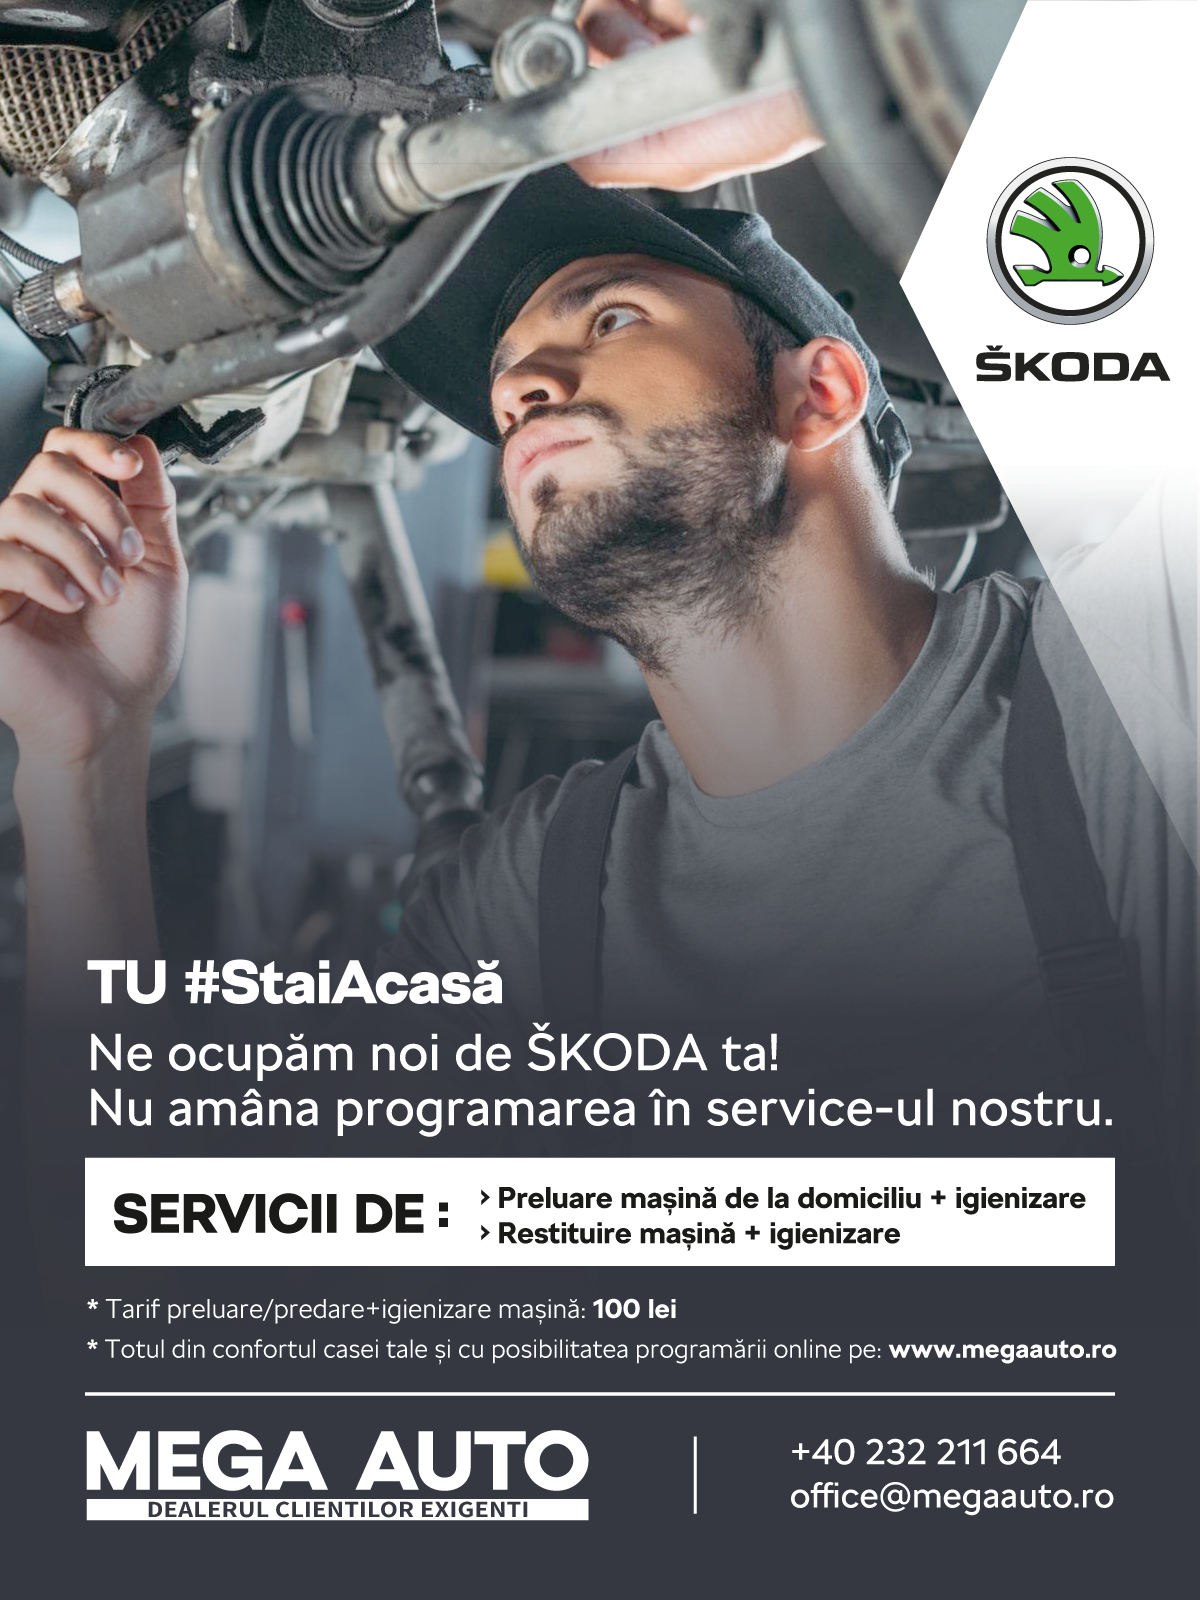 Mega Auto, dealerul ŠKODA în Iași, pune la dispoziție serviciul de preluare mașină de la domiciliu pentru operațiunile de service